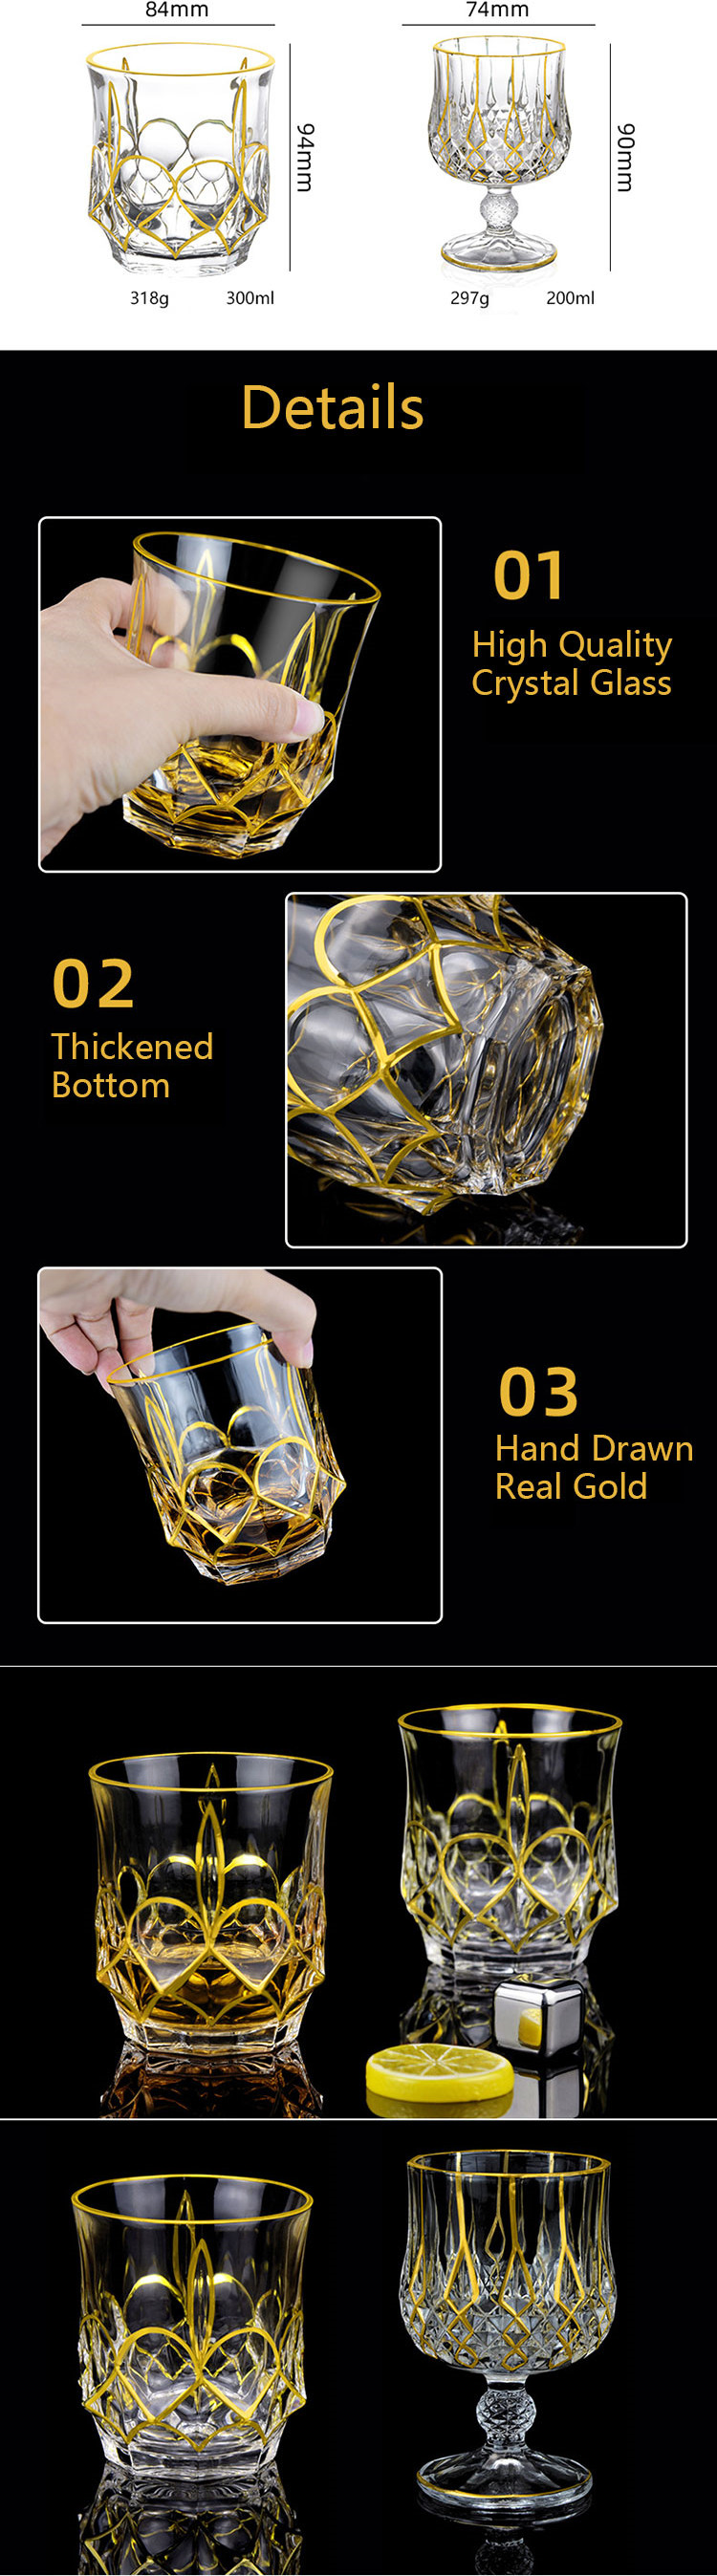 Gold Rim Glassware7